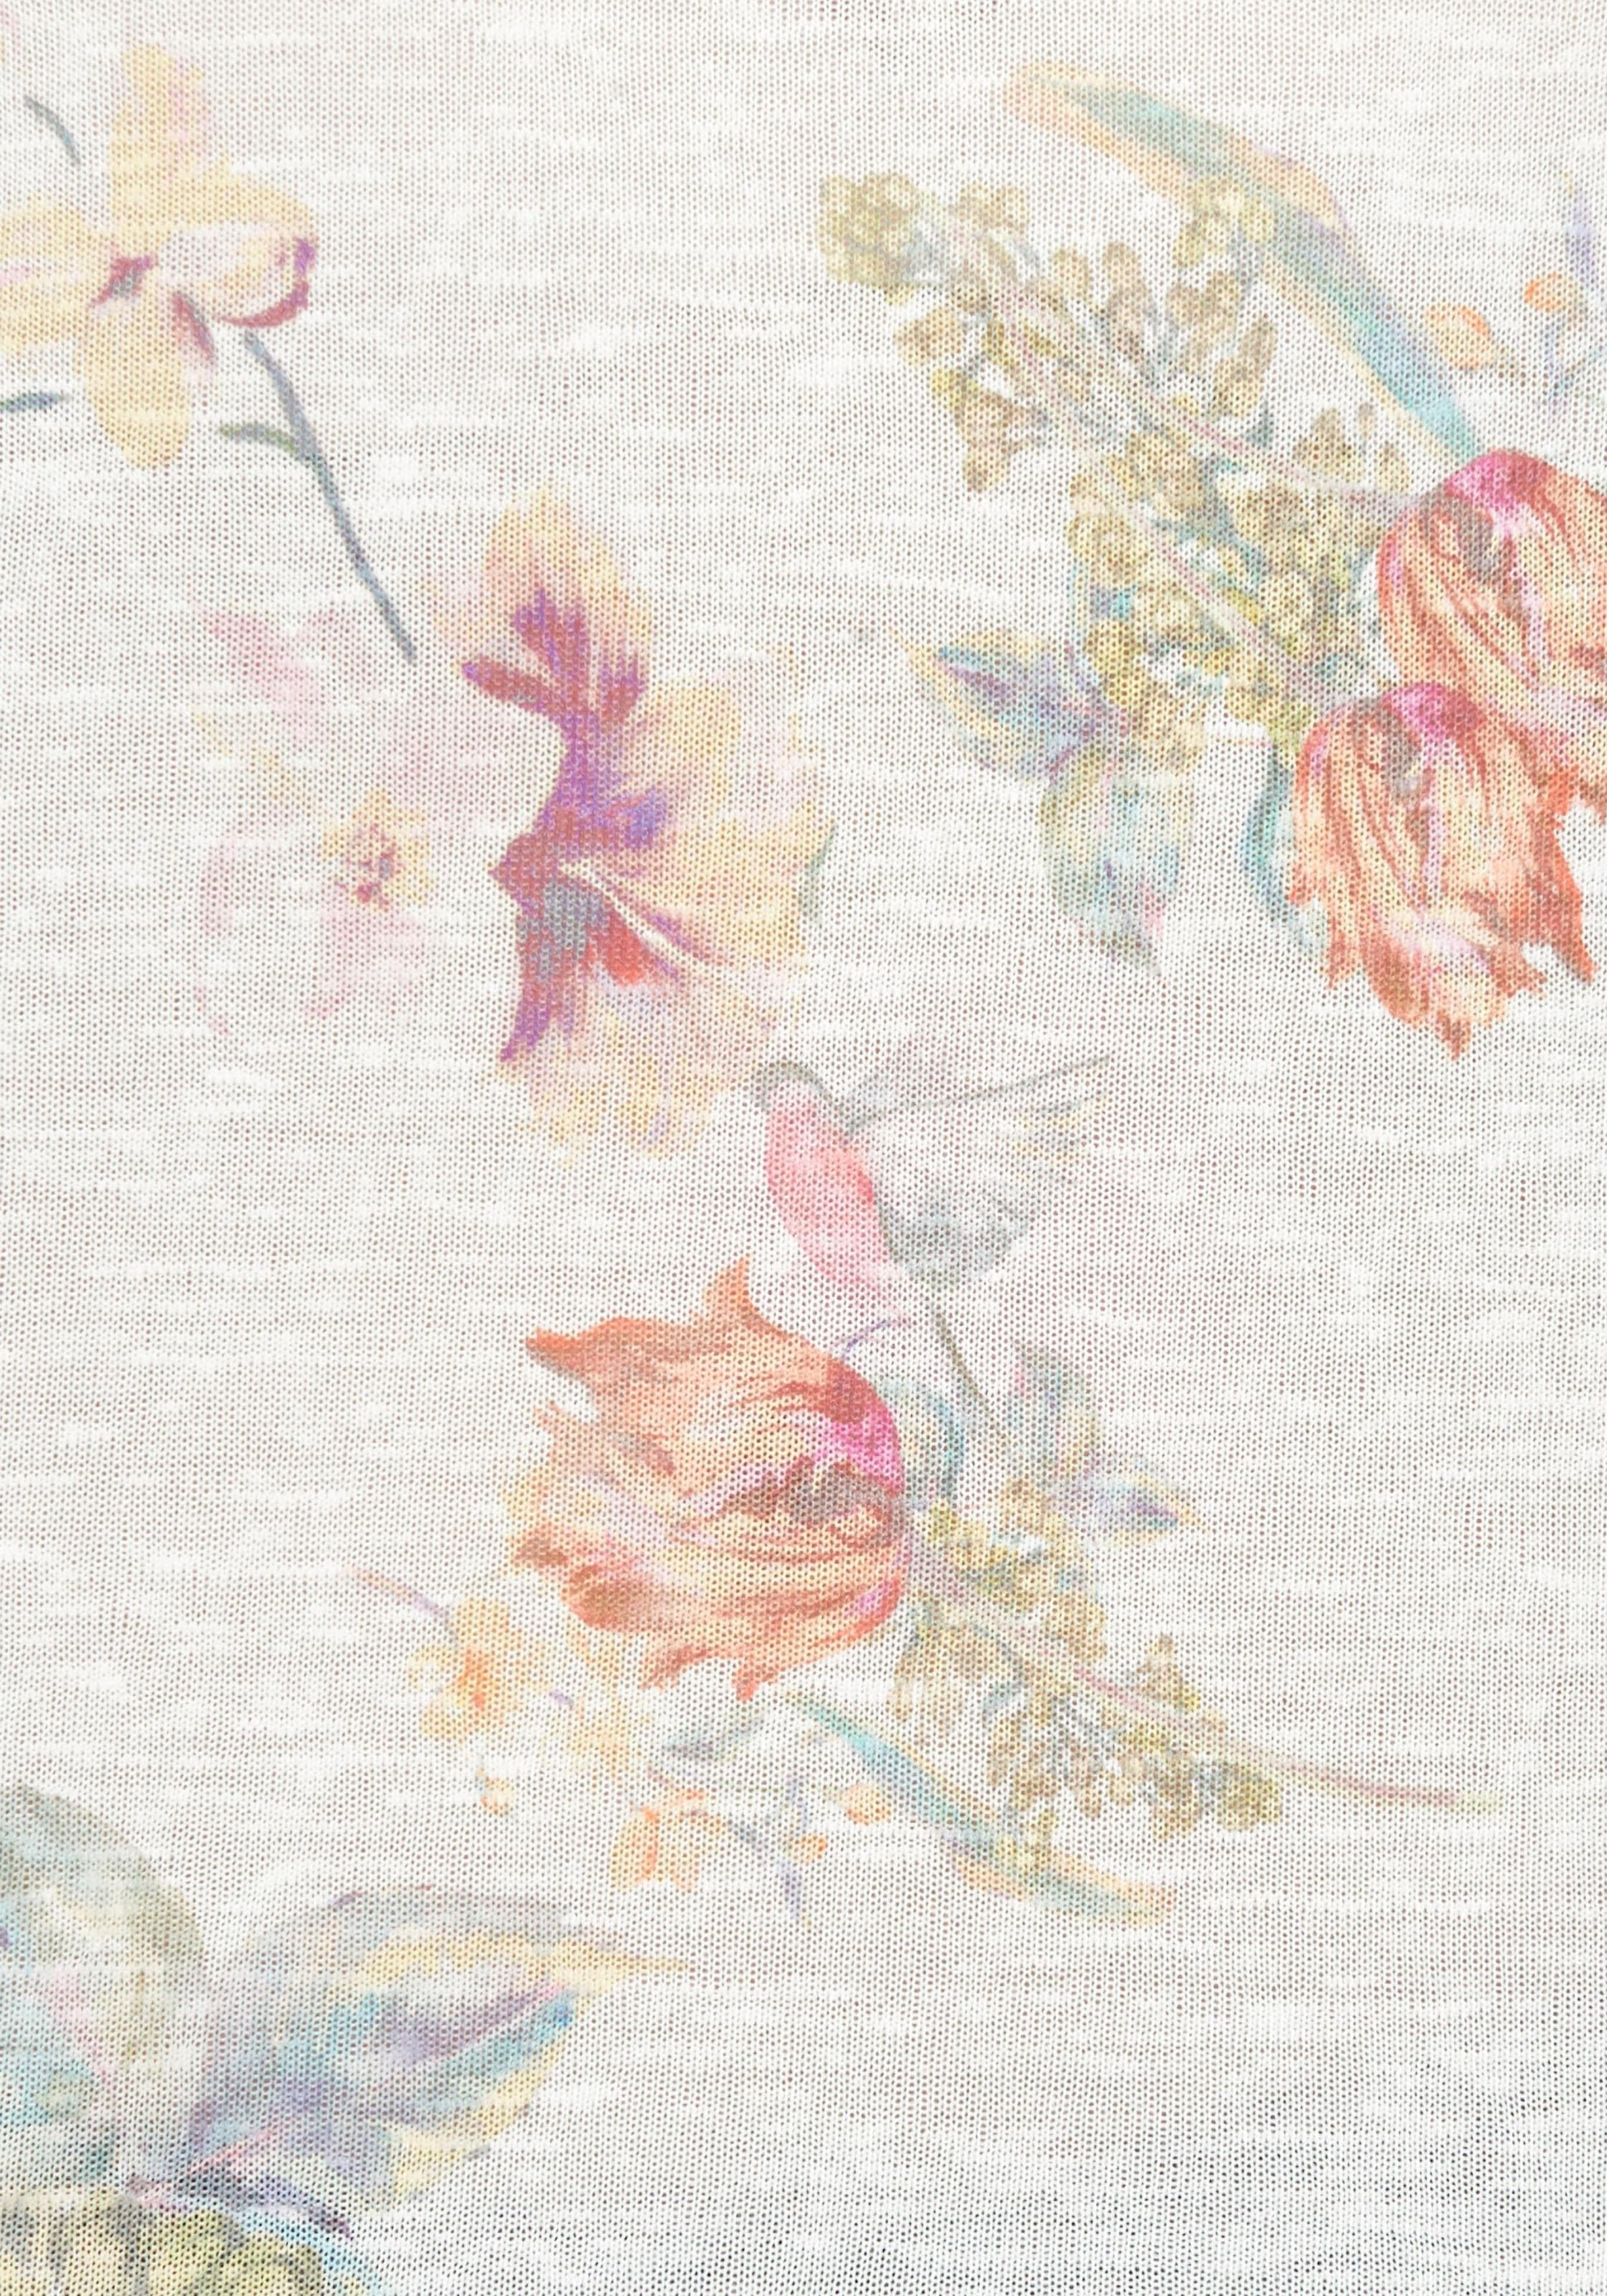 Aniston CASUAL Langarmshirt, mit grossflächigem Blumendruck und Vögeln